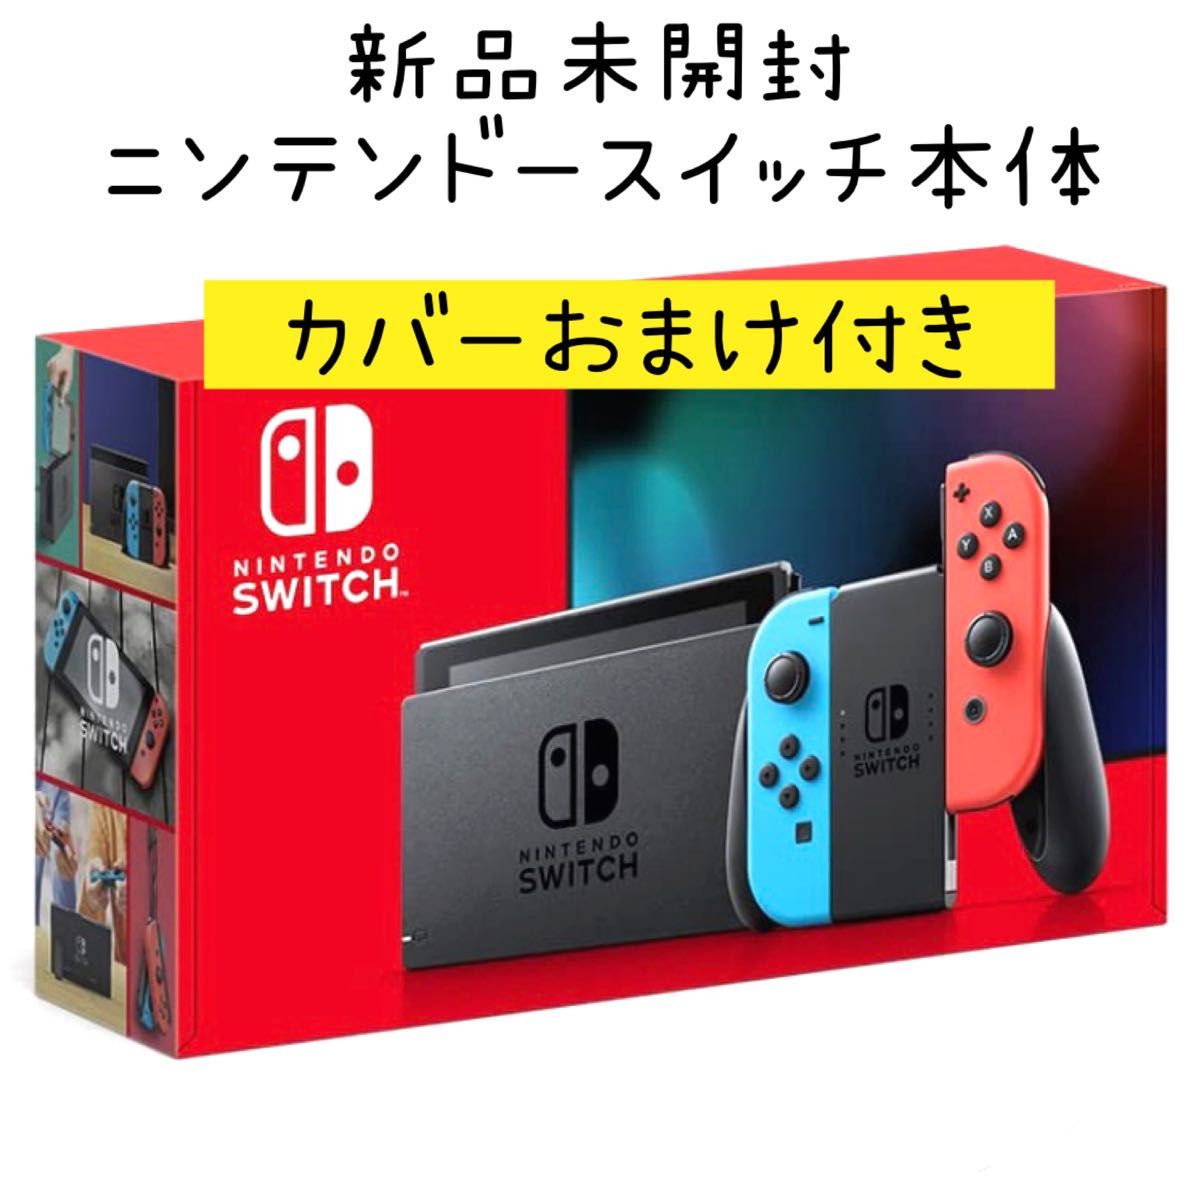 シルバー/レッド 新品 未開封 明日発送 Nintendo Switch ネオンブルー